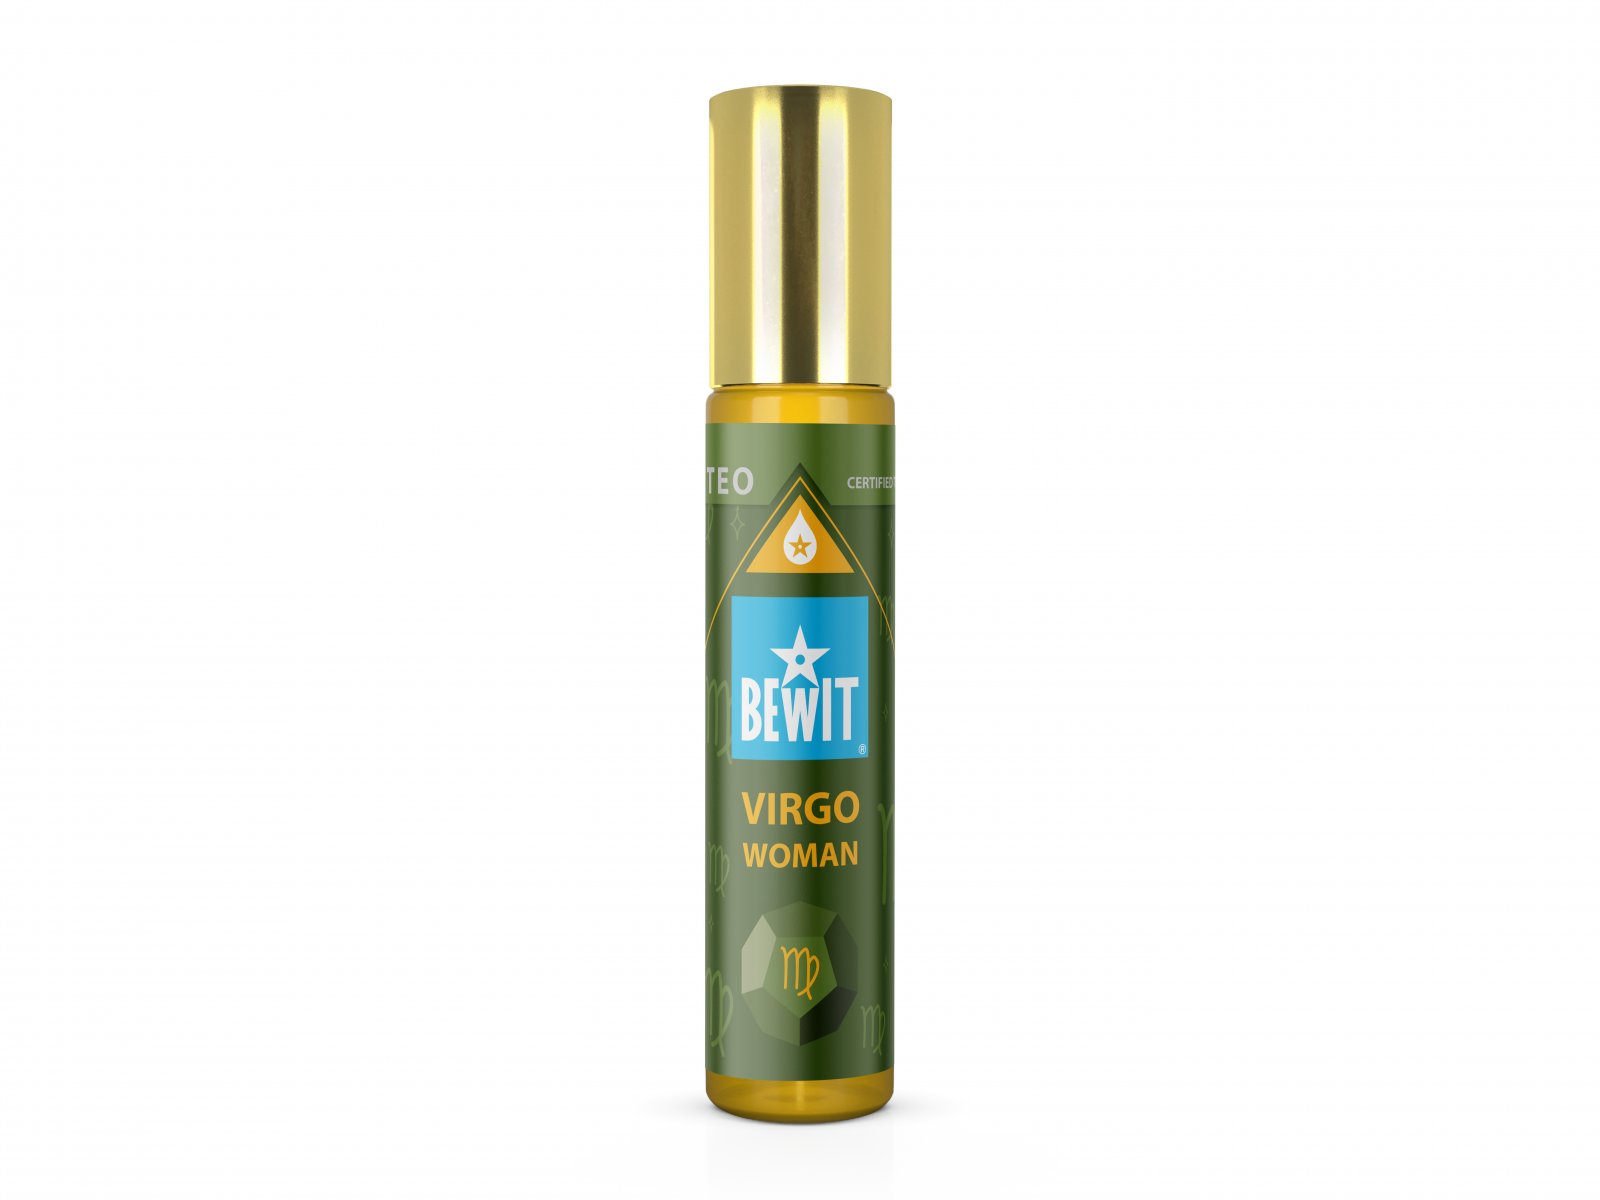 BEWIT WOMAN VIRGO (PANNA) - Ženský roll-on olejový parfém - 1